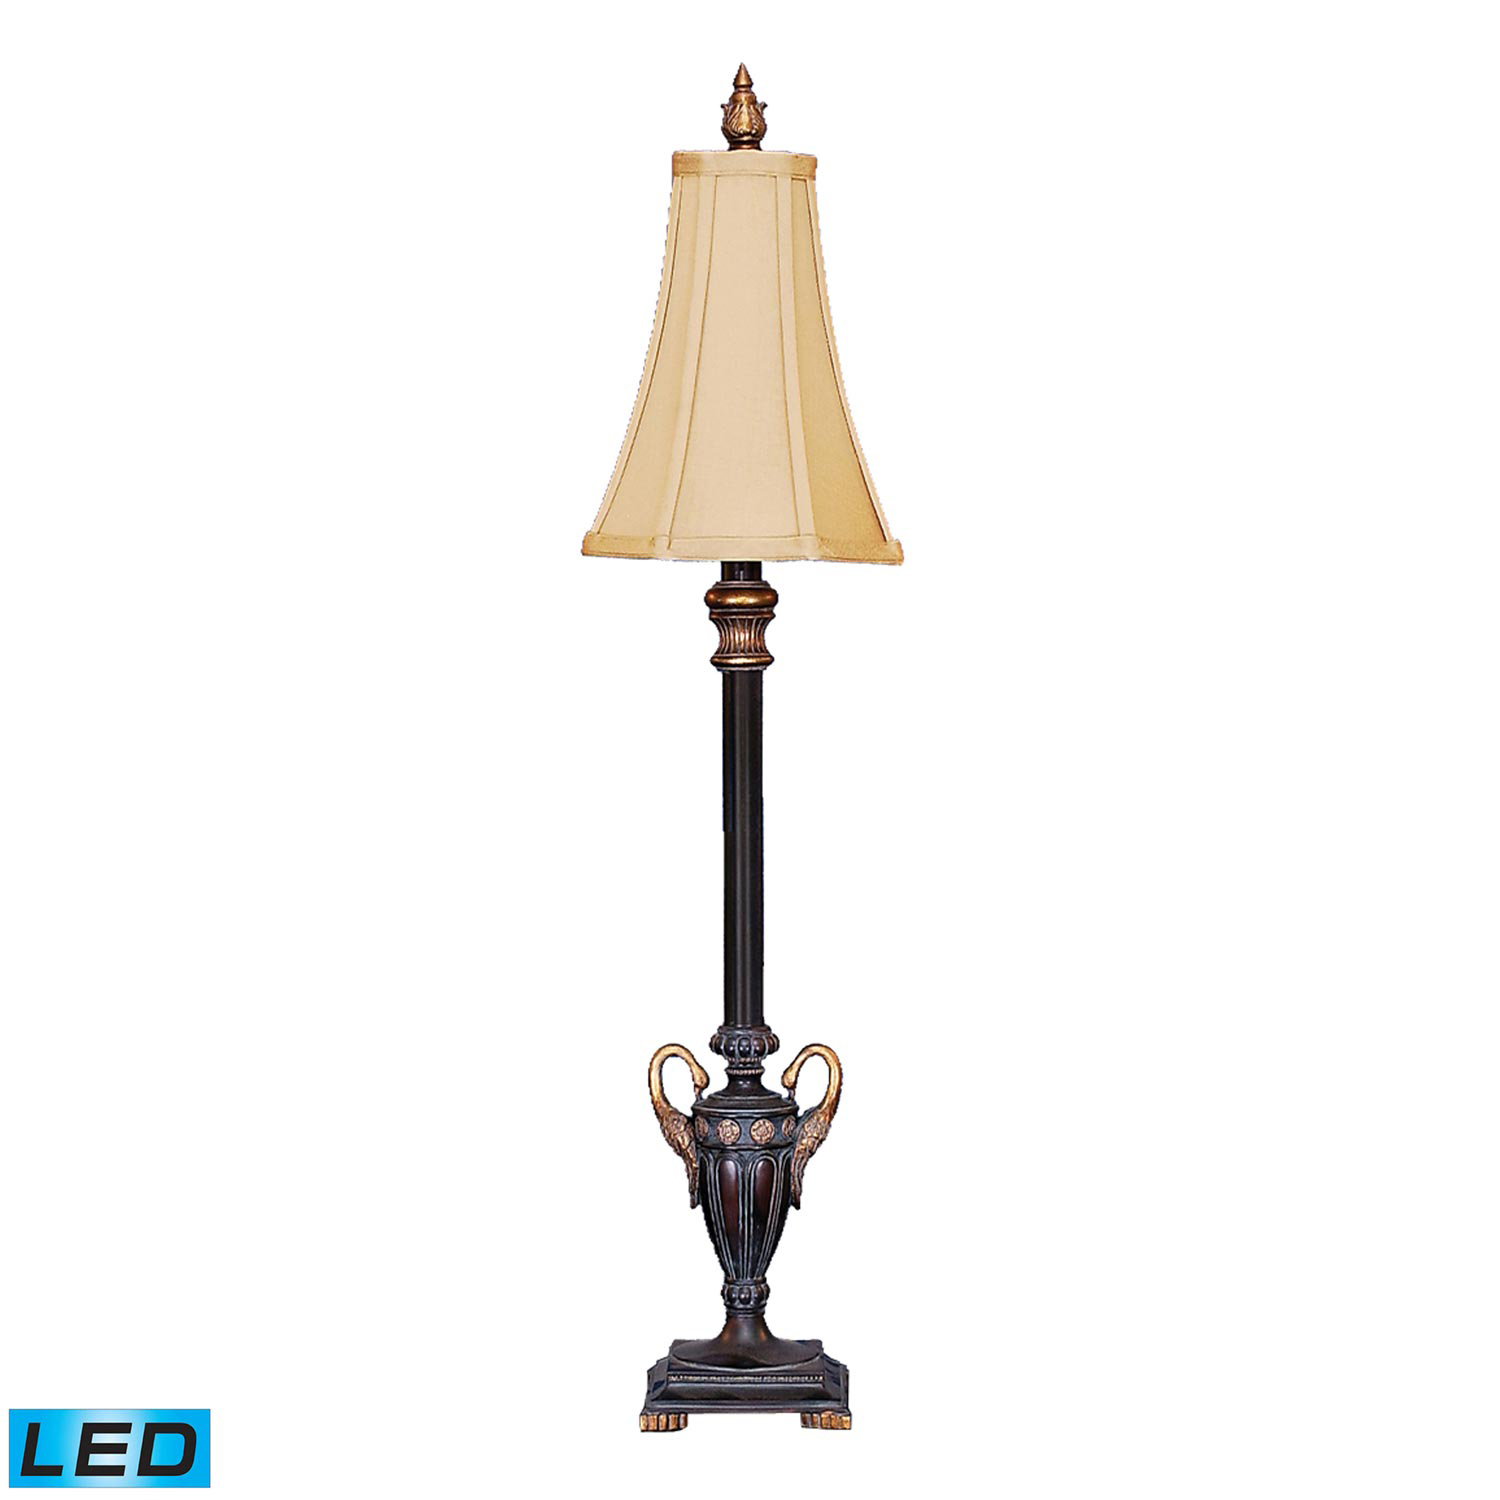 Elk Lighting 91-588-LED Double Swan Candlestick Table Lamp - Black / Gold Leaf